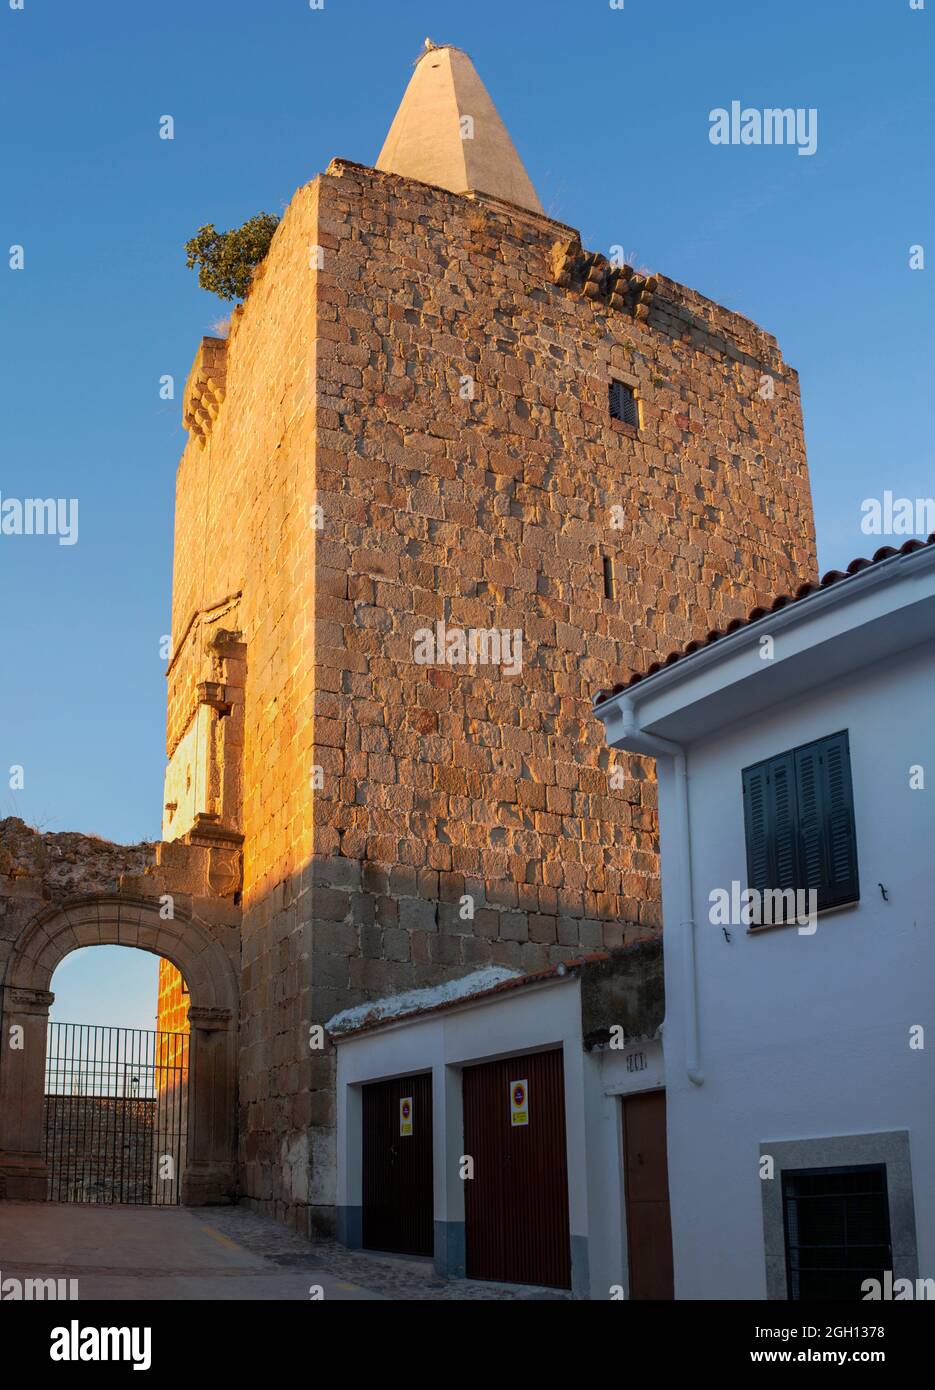 Galisteo, eine wunderschöne ummauerte Stadt aus dem Alagon Valley. 15. Palast-Festung. Extremadura, Spanien. Stockfoto